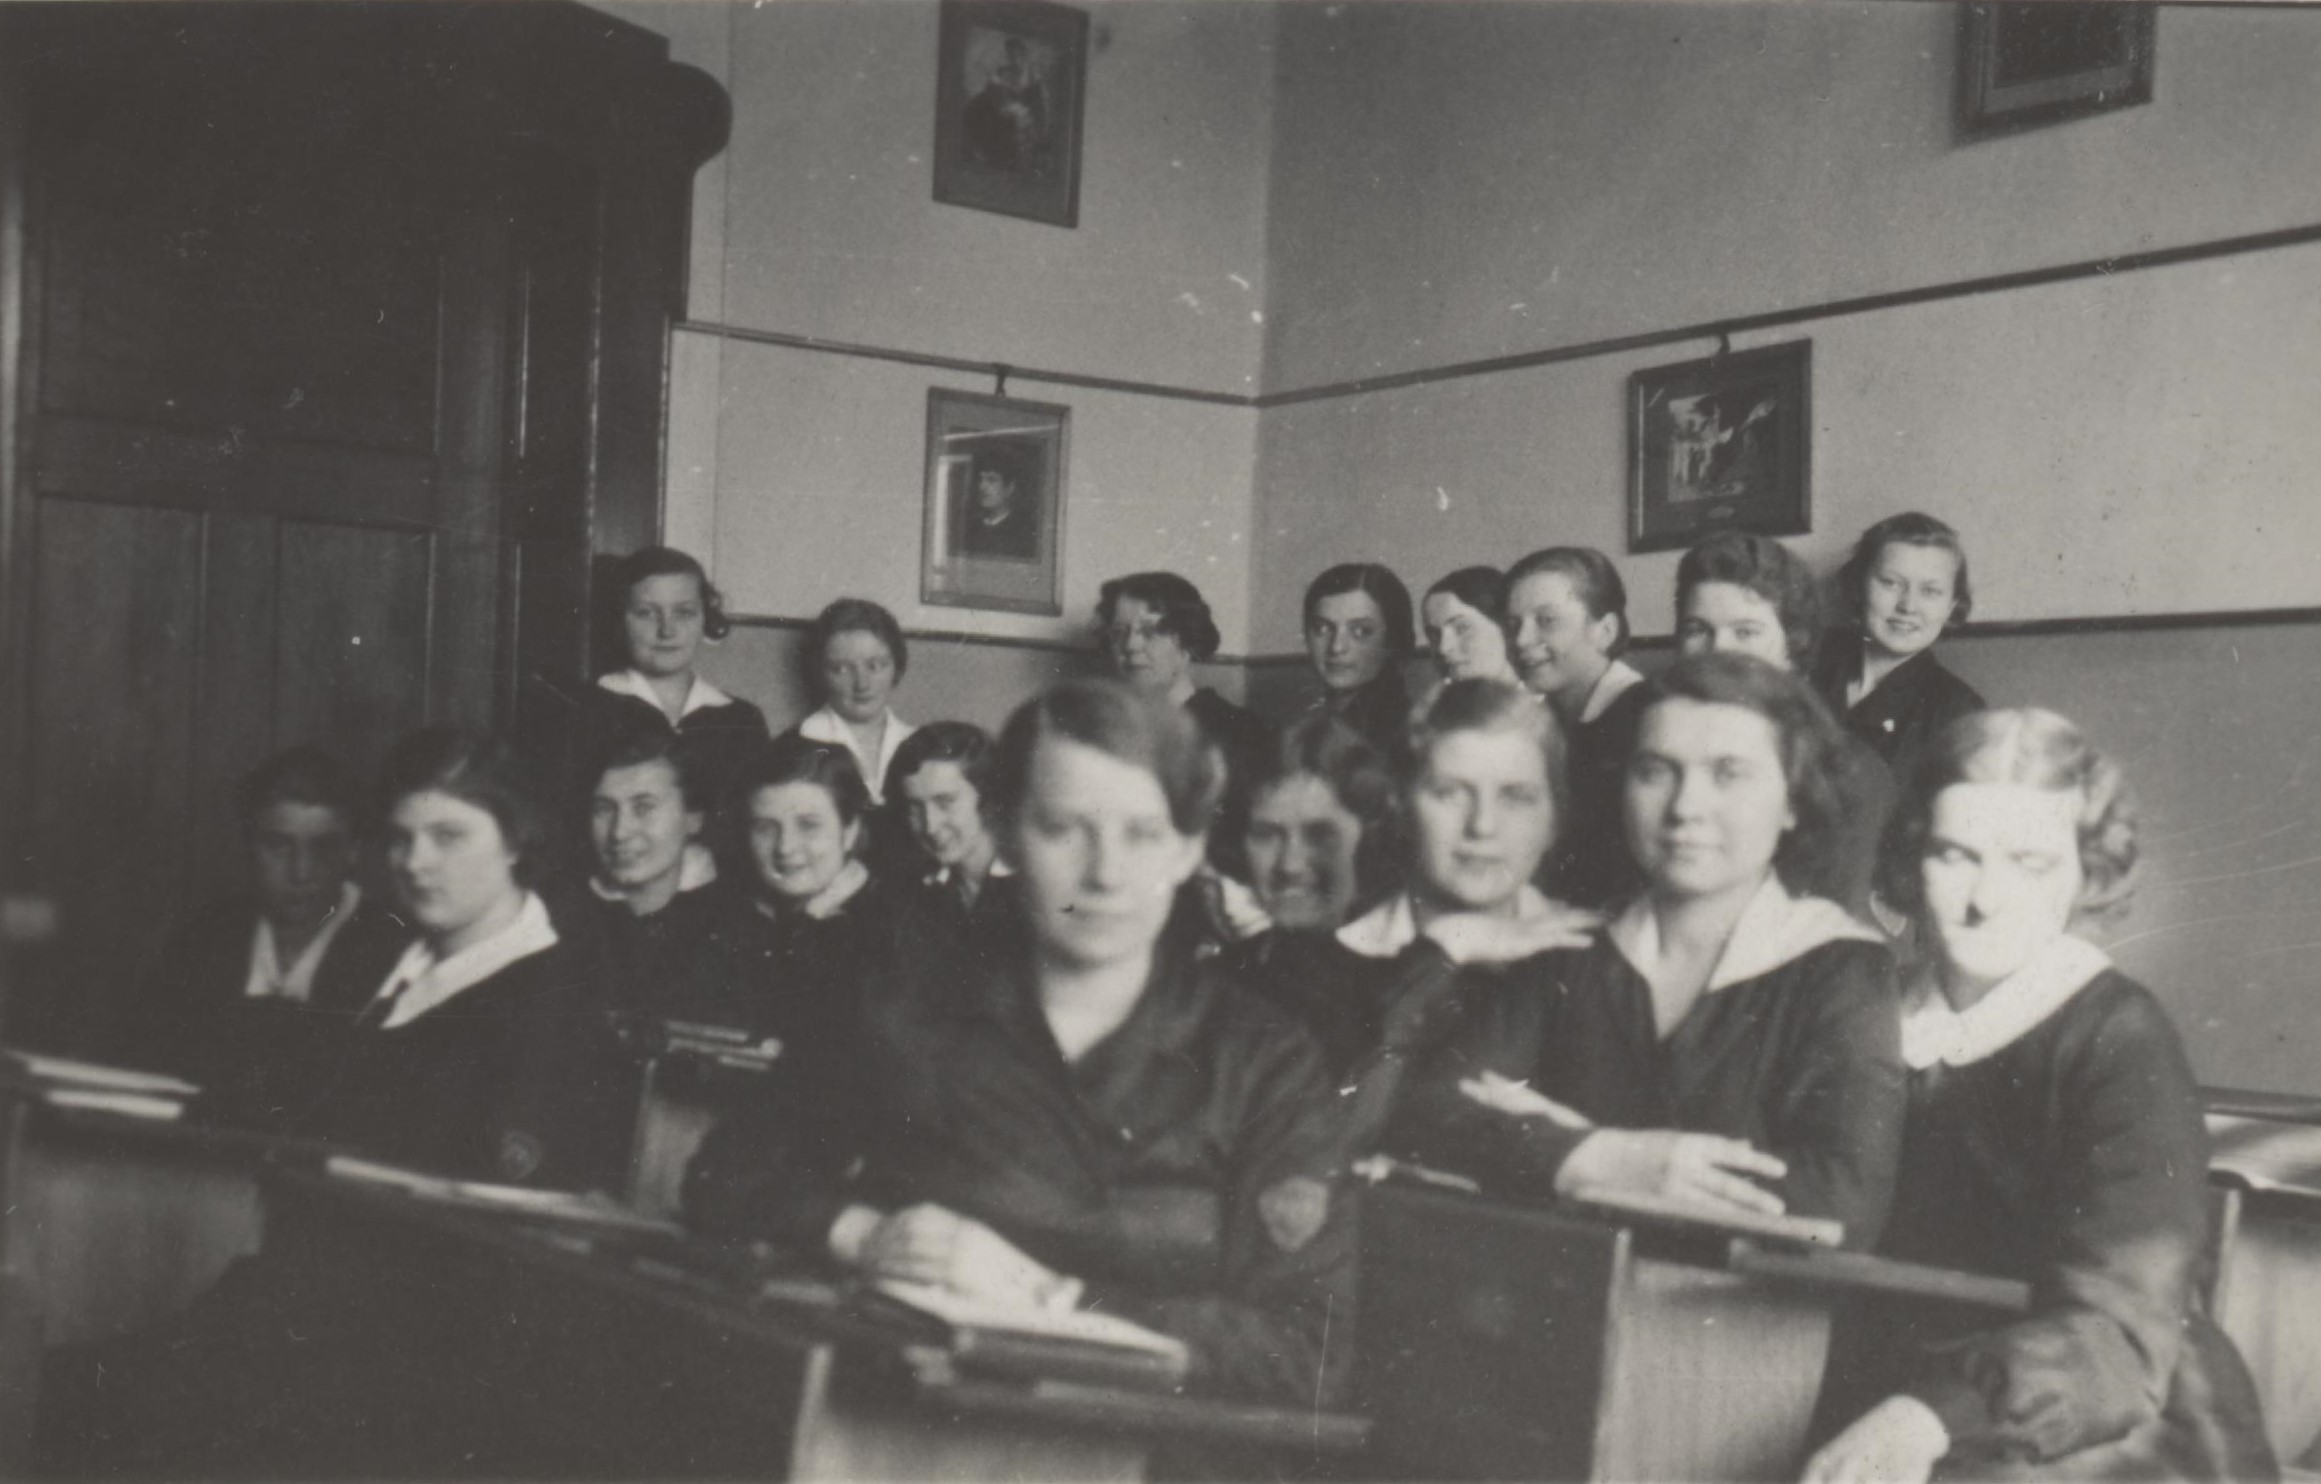 Mama klasaVIIIA matura 1935 w lawkach